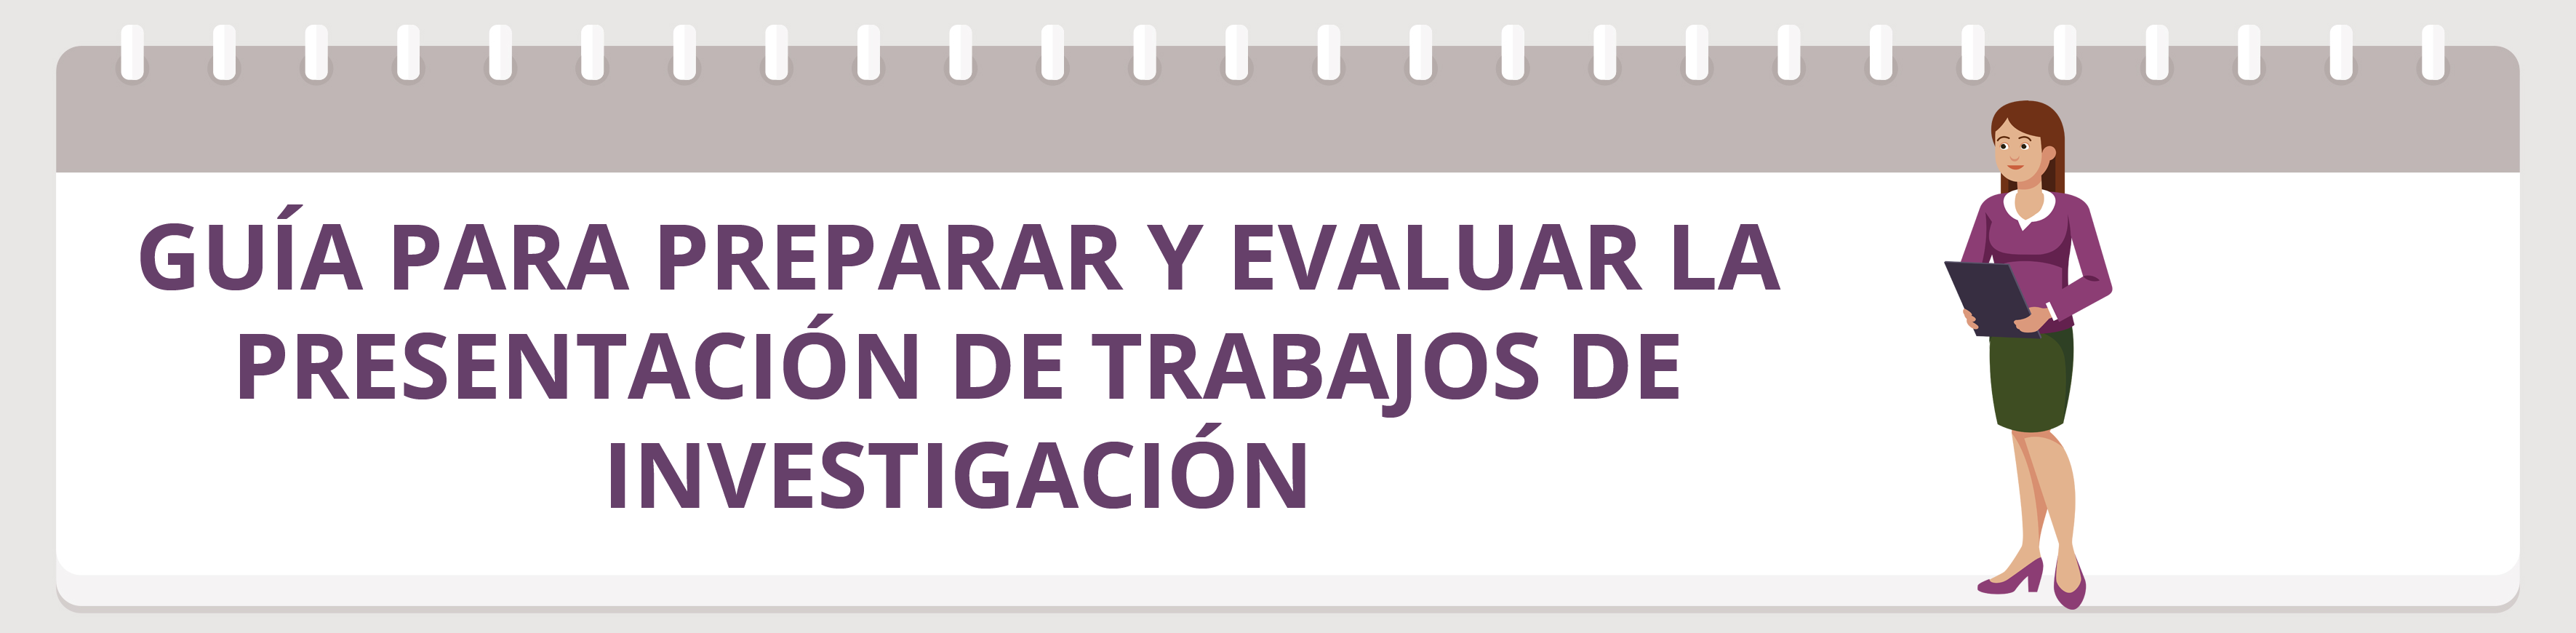 guia_evaluar_presentacion_trabajos_investigacion.png